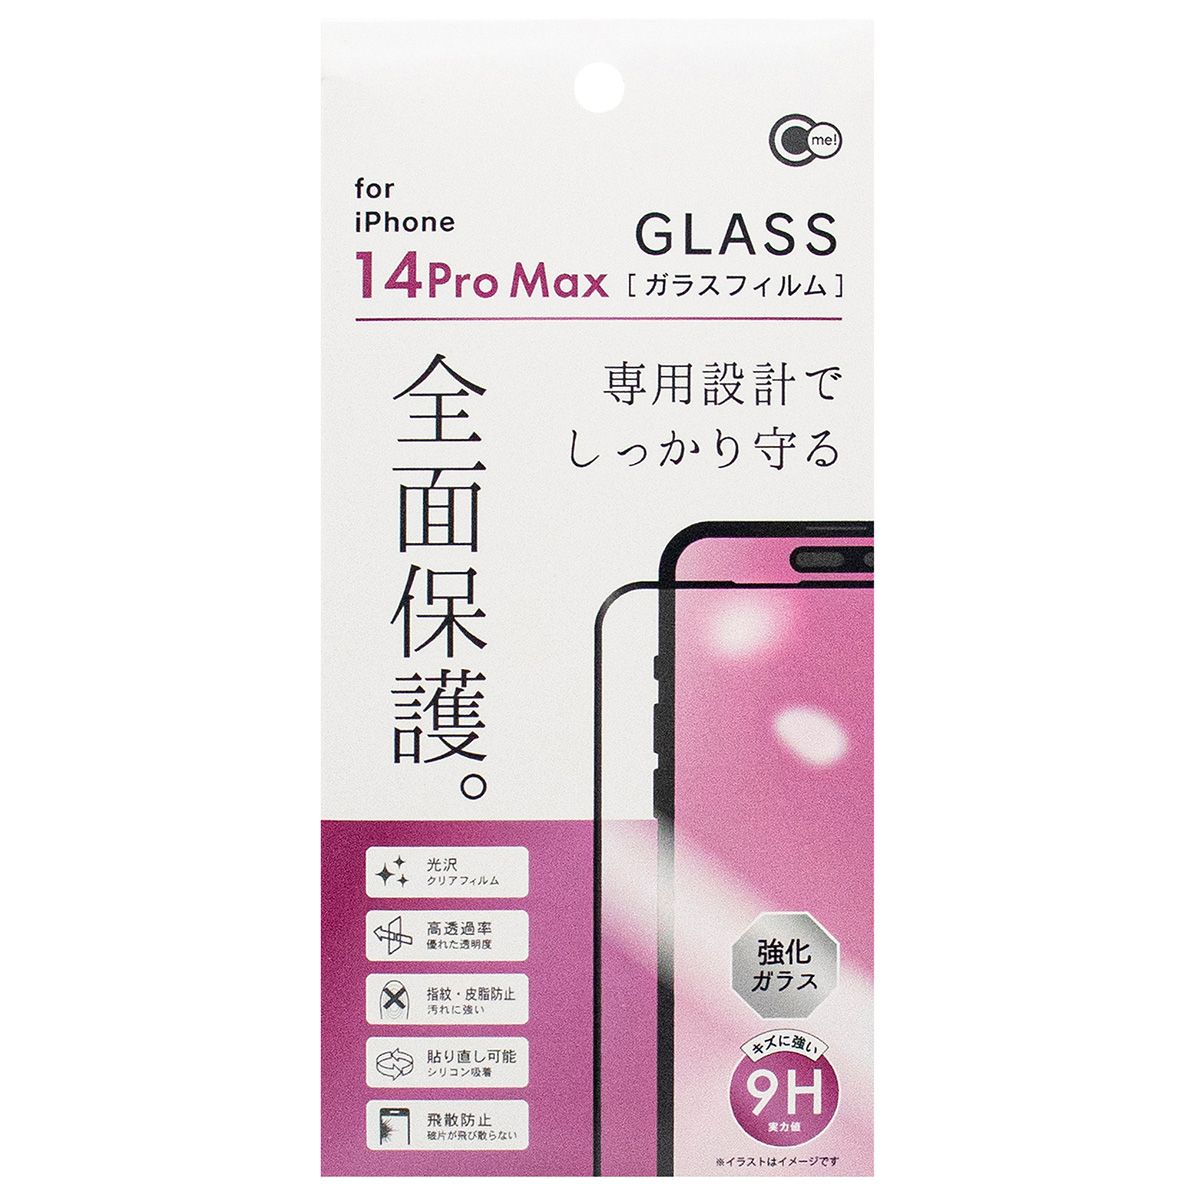 スマホ 液晶保護フィルム 携帯 iPhone14ProMax用 全面保護ガラスフィルム 362418